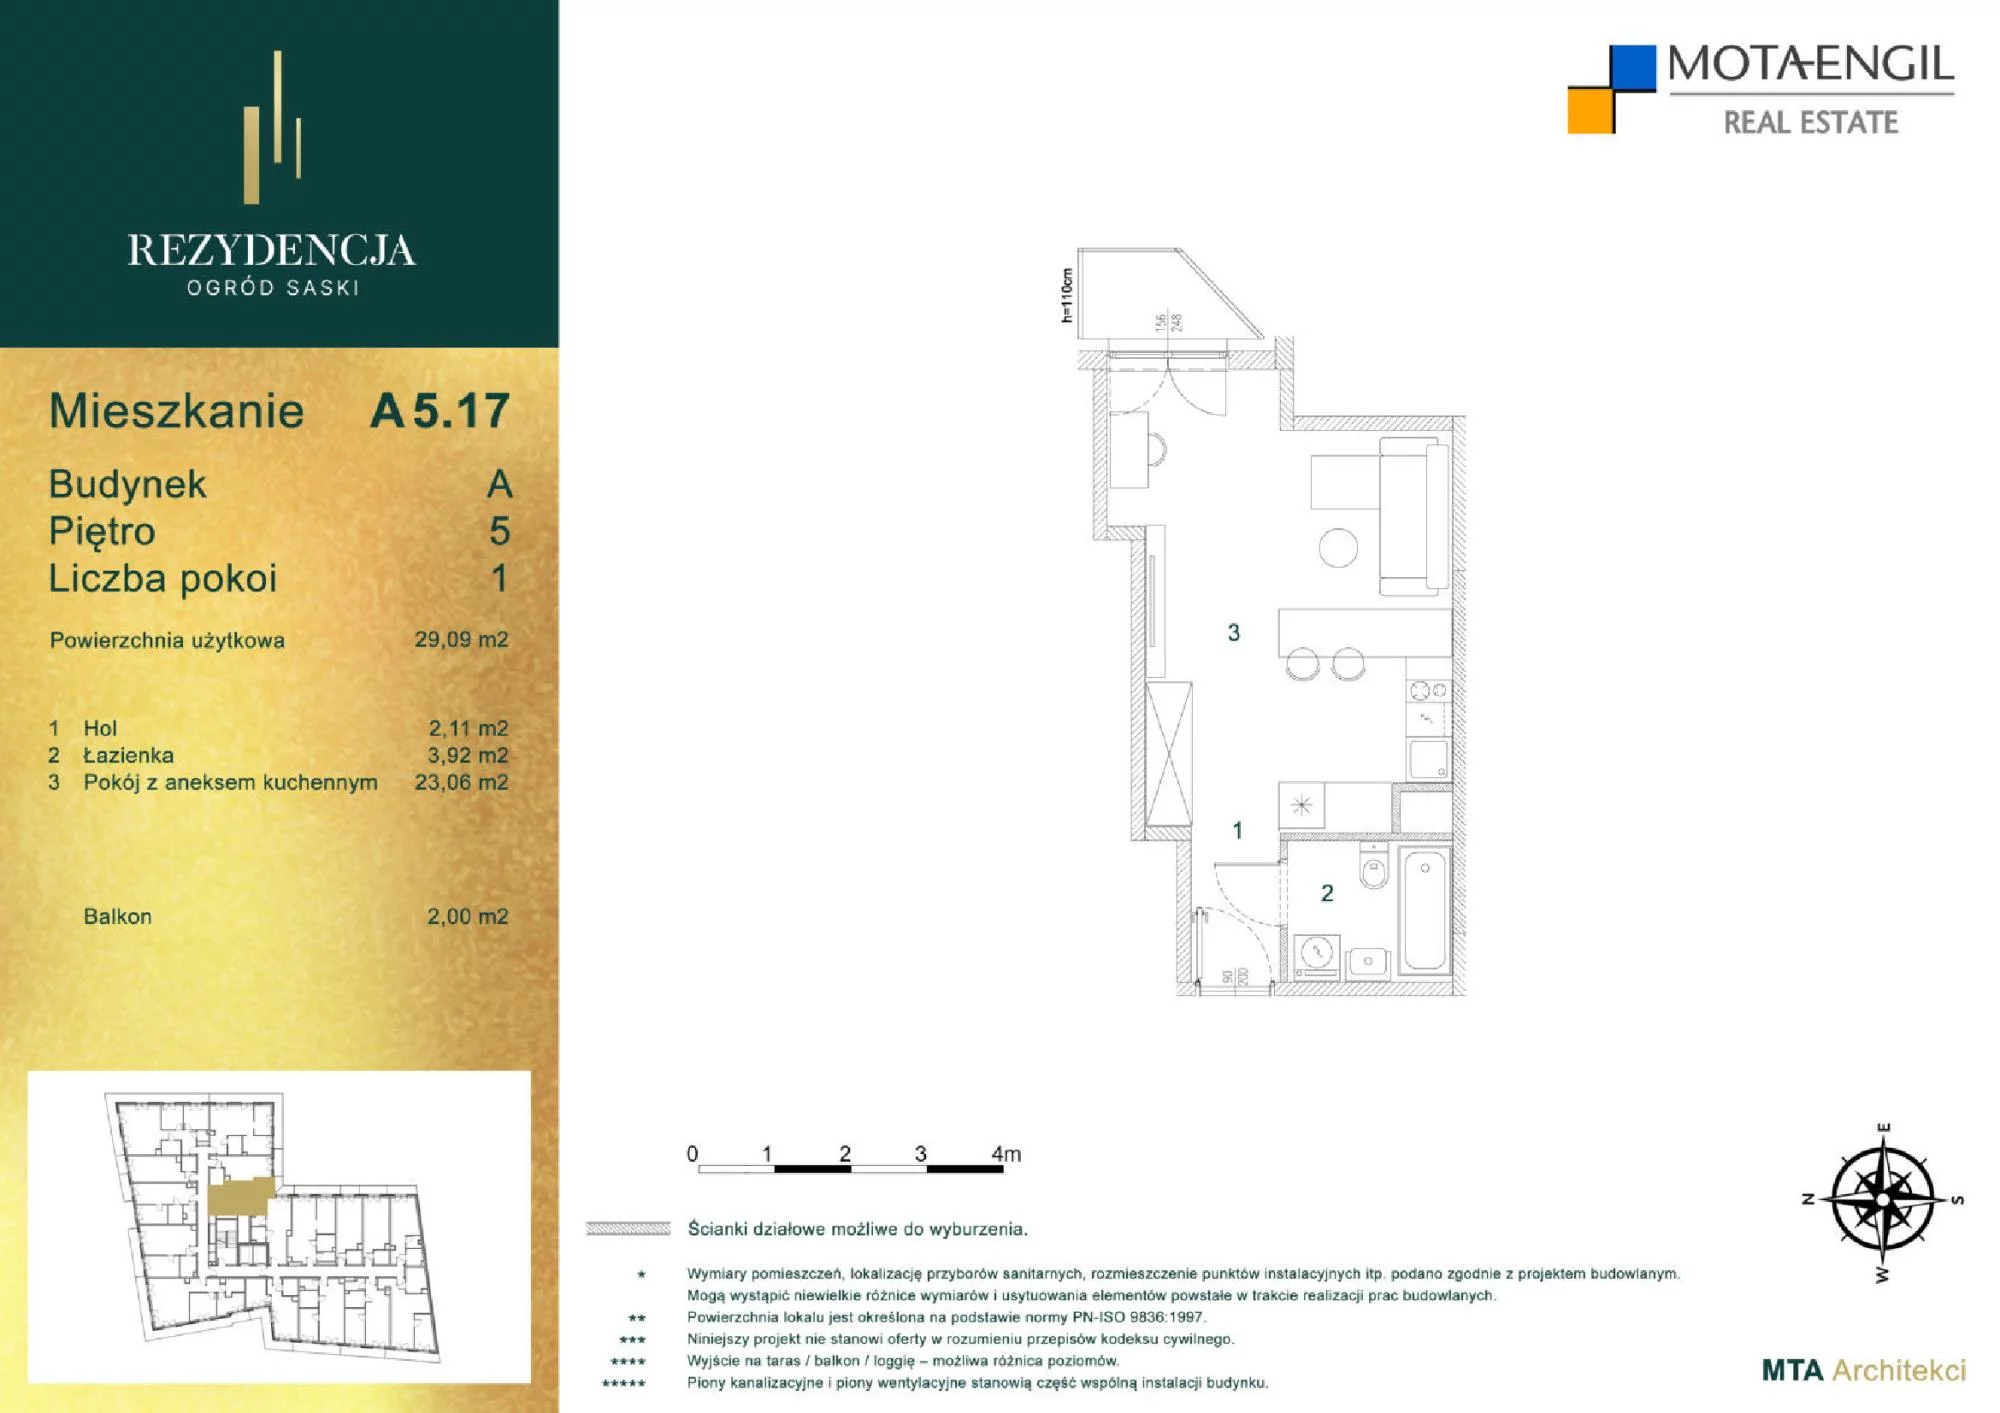 Mieszkanie 29,09 m², piętro 5, oferta nr A5.17, Rezydencja Ogród Saski, Lublin, Wieniawa, ul. Jasna 7, 7A